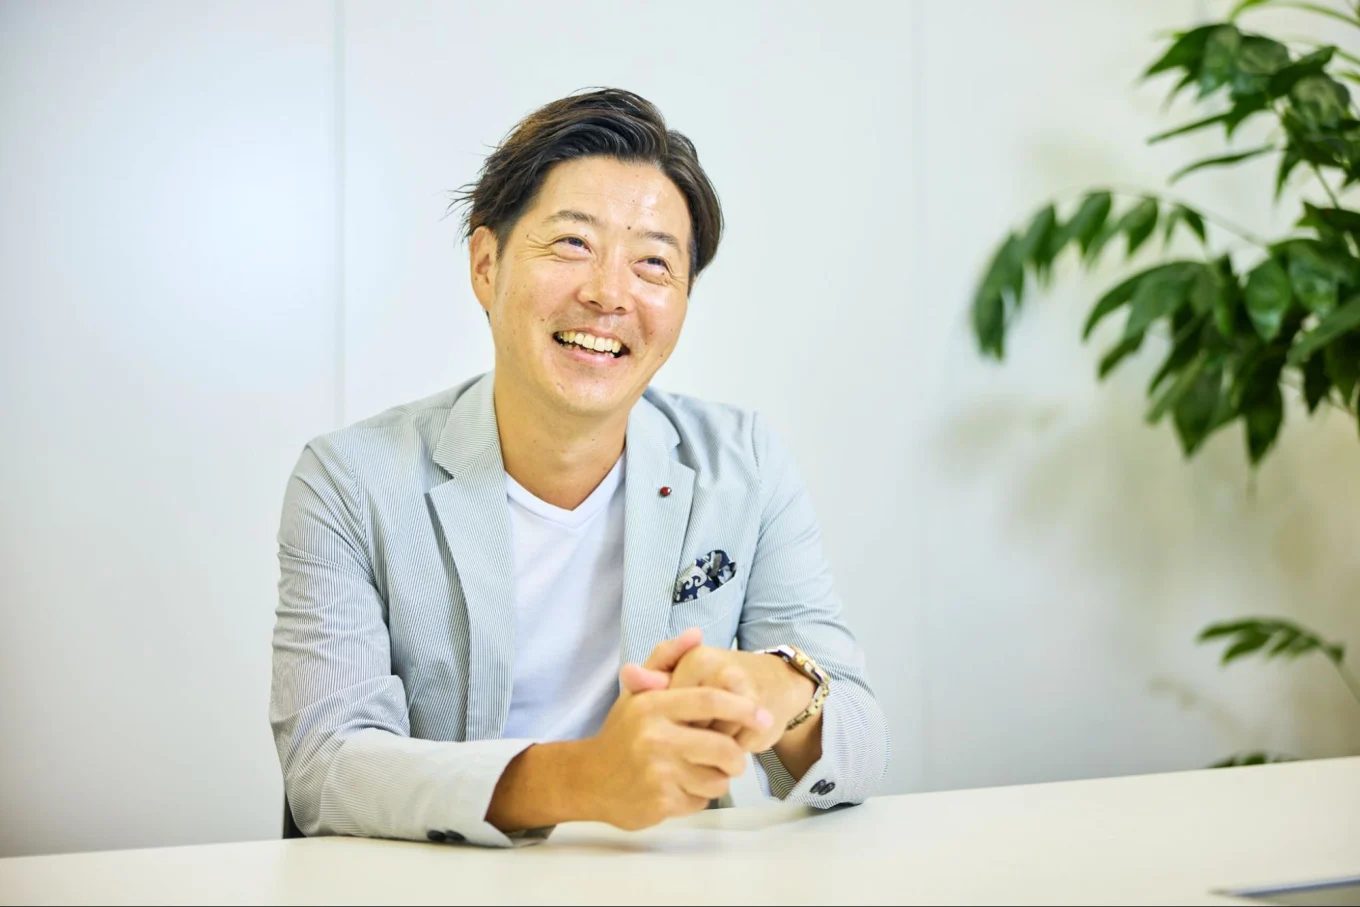 コクー株式会社 代表取締役CEO 入江雄介 笑顔でお話ししている様子